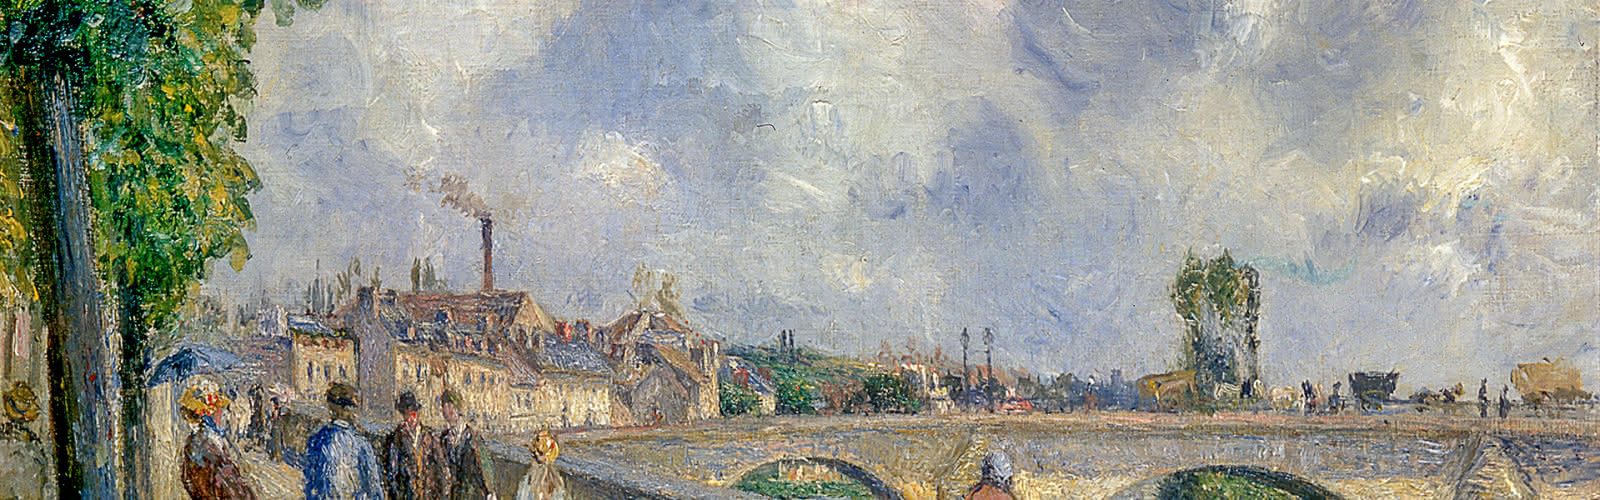 Peinture réalisée par Camille Pissarro représentant la ville de Pontoise durant le XIXème siècle